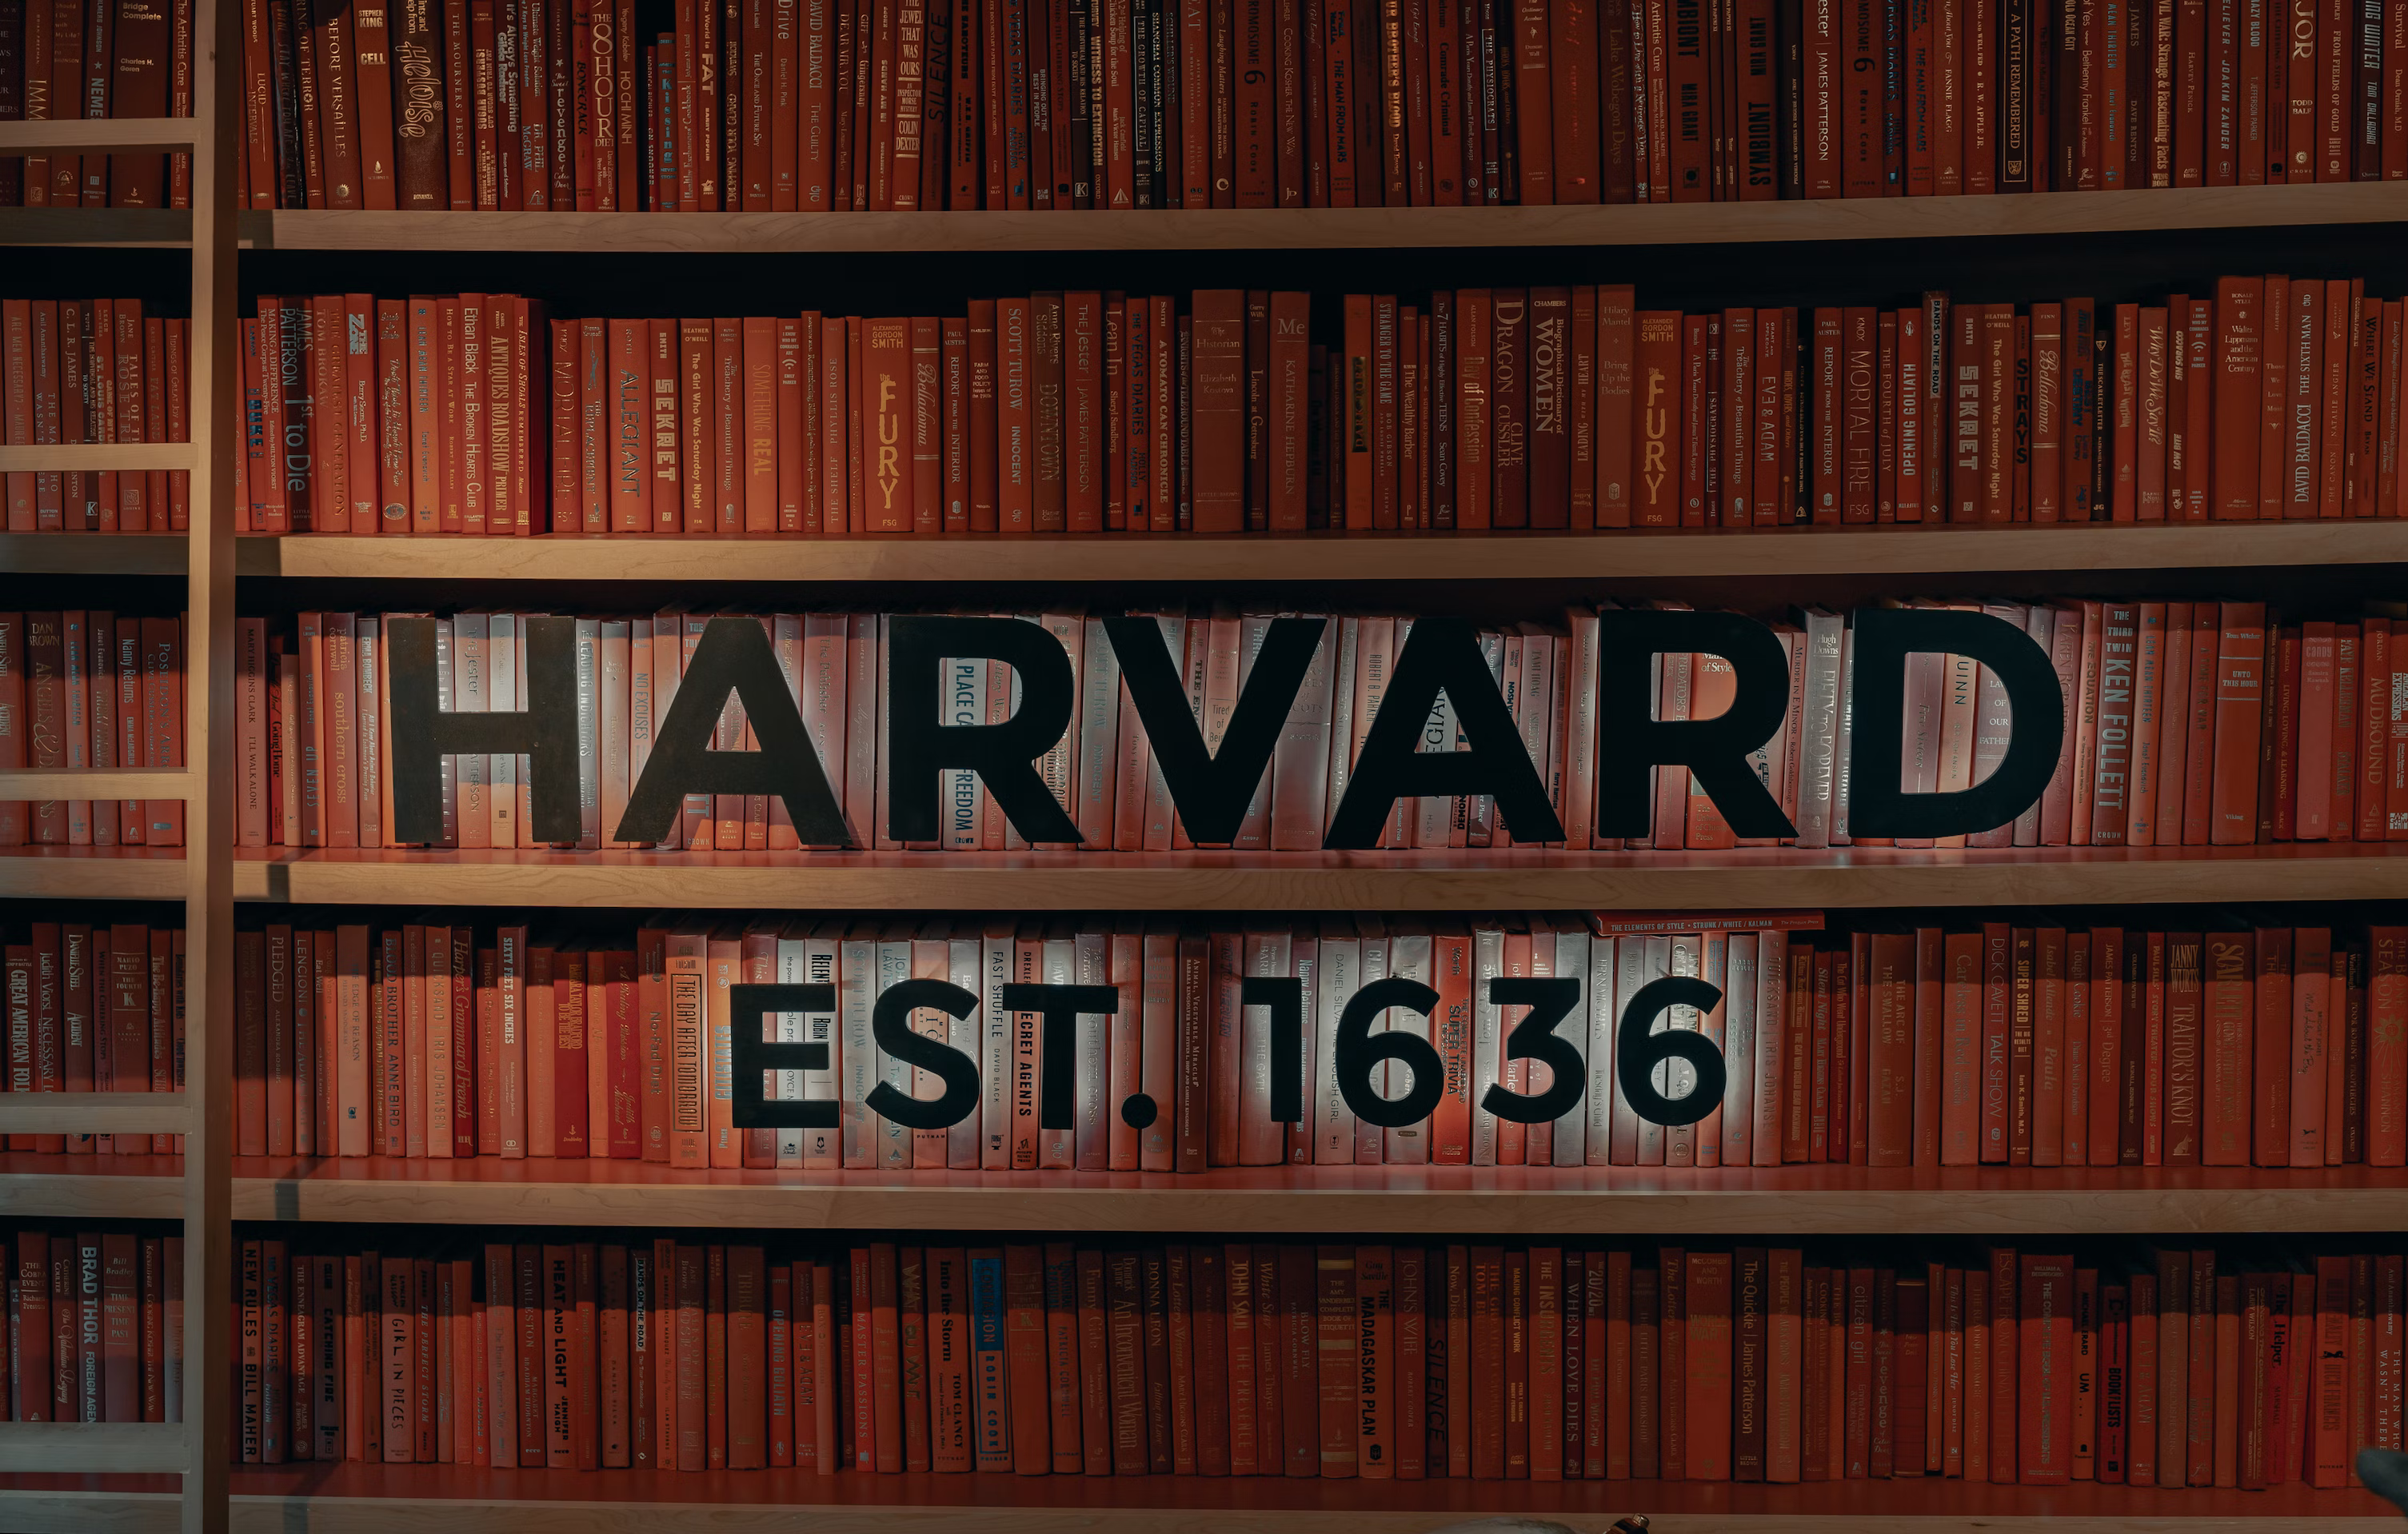 CS50 Botの世界に飛び込んで、HarvardのAIパワードのコンピュータサイエンスコース向けの教育アシスタントについて学びましょう。その機能、価格、教育の革新について知りましょう。お見逃しなく！